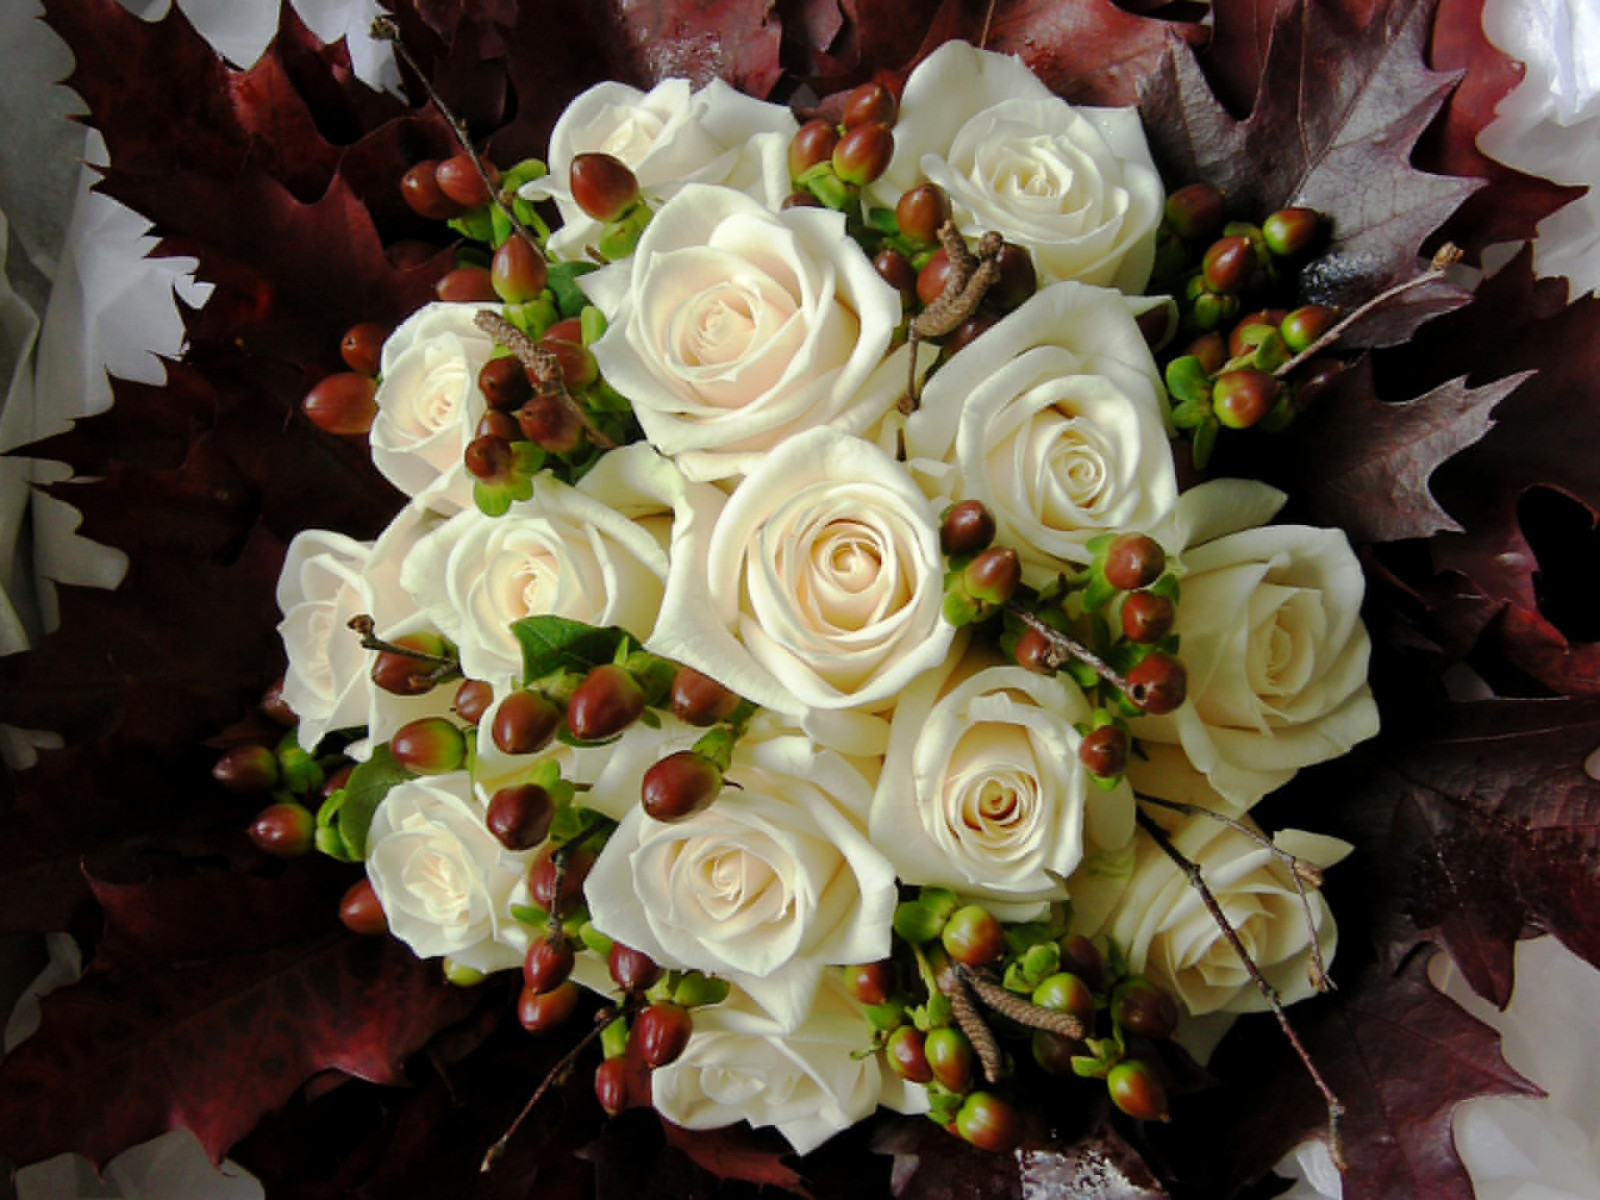 mawar, bunga-bunga, putih, buket, foto